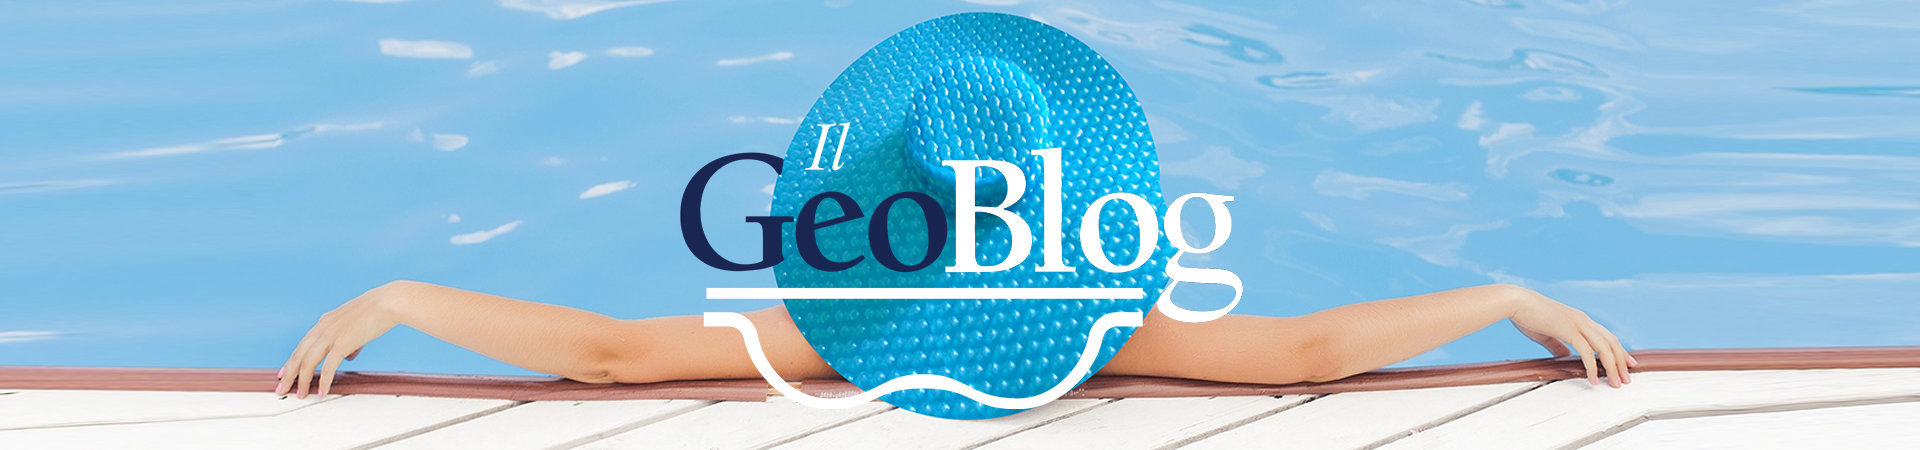 Signora-GeoBlog-con-cappello-GeoBubble-seduto-a-bordo-piscina